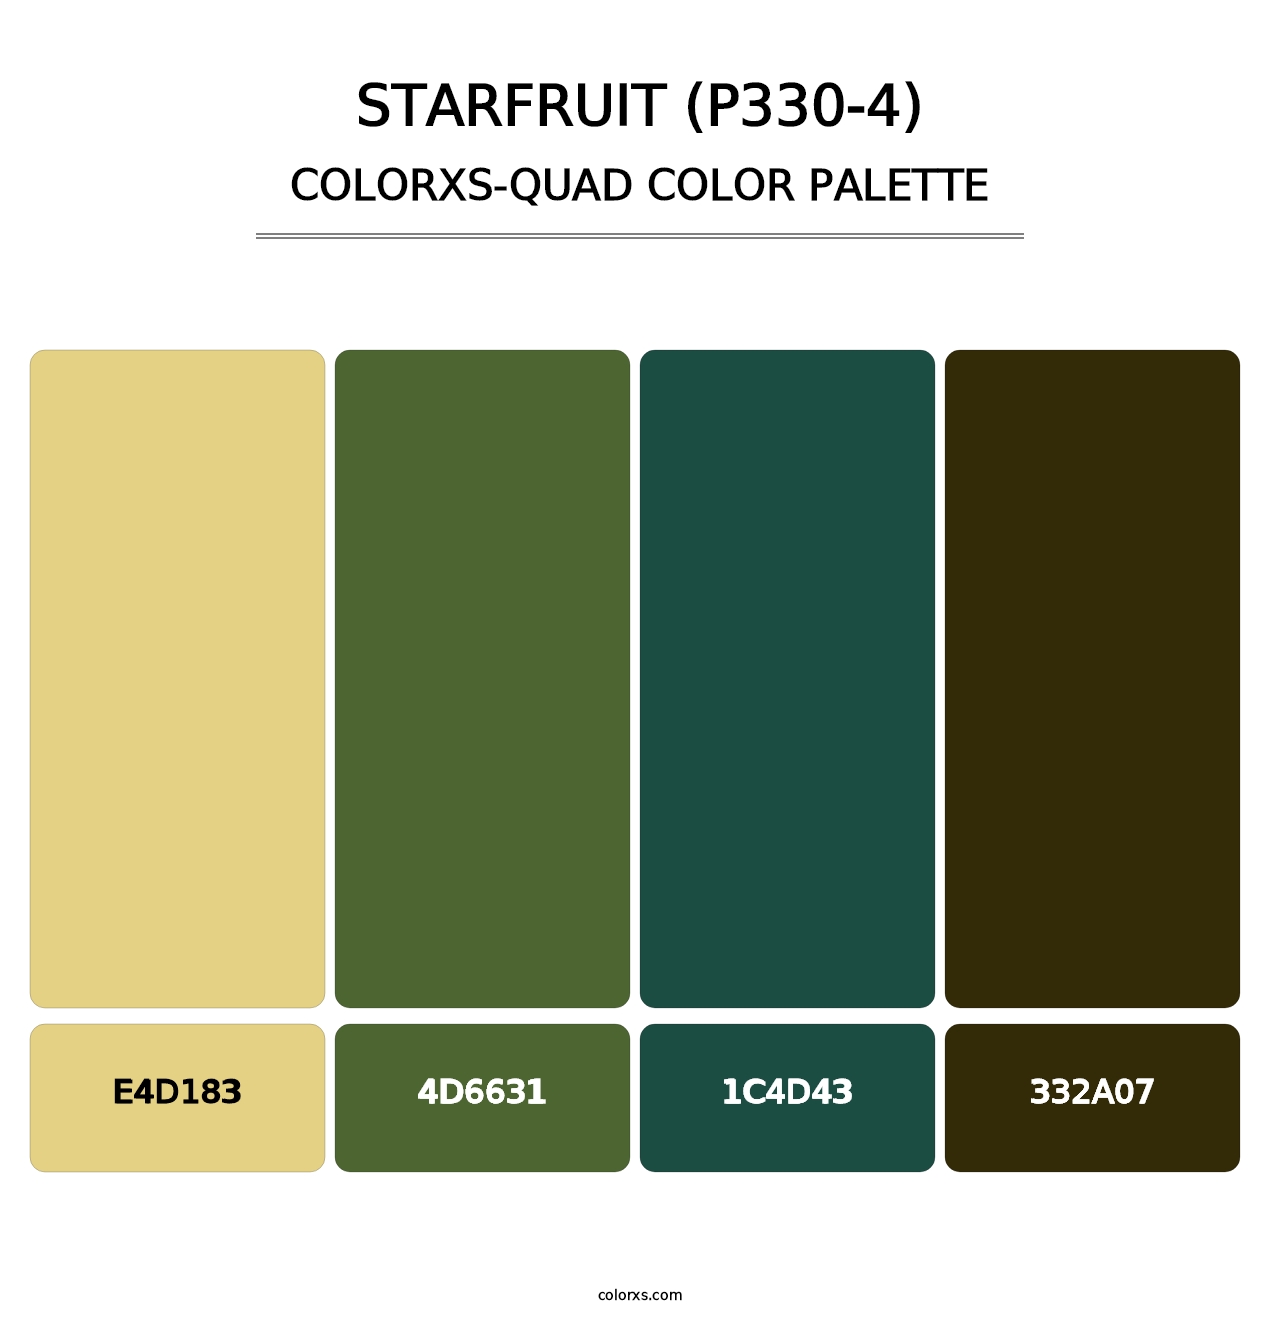 Starfruit (P330-4) - Colorxs Quad Palette